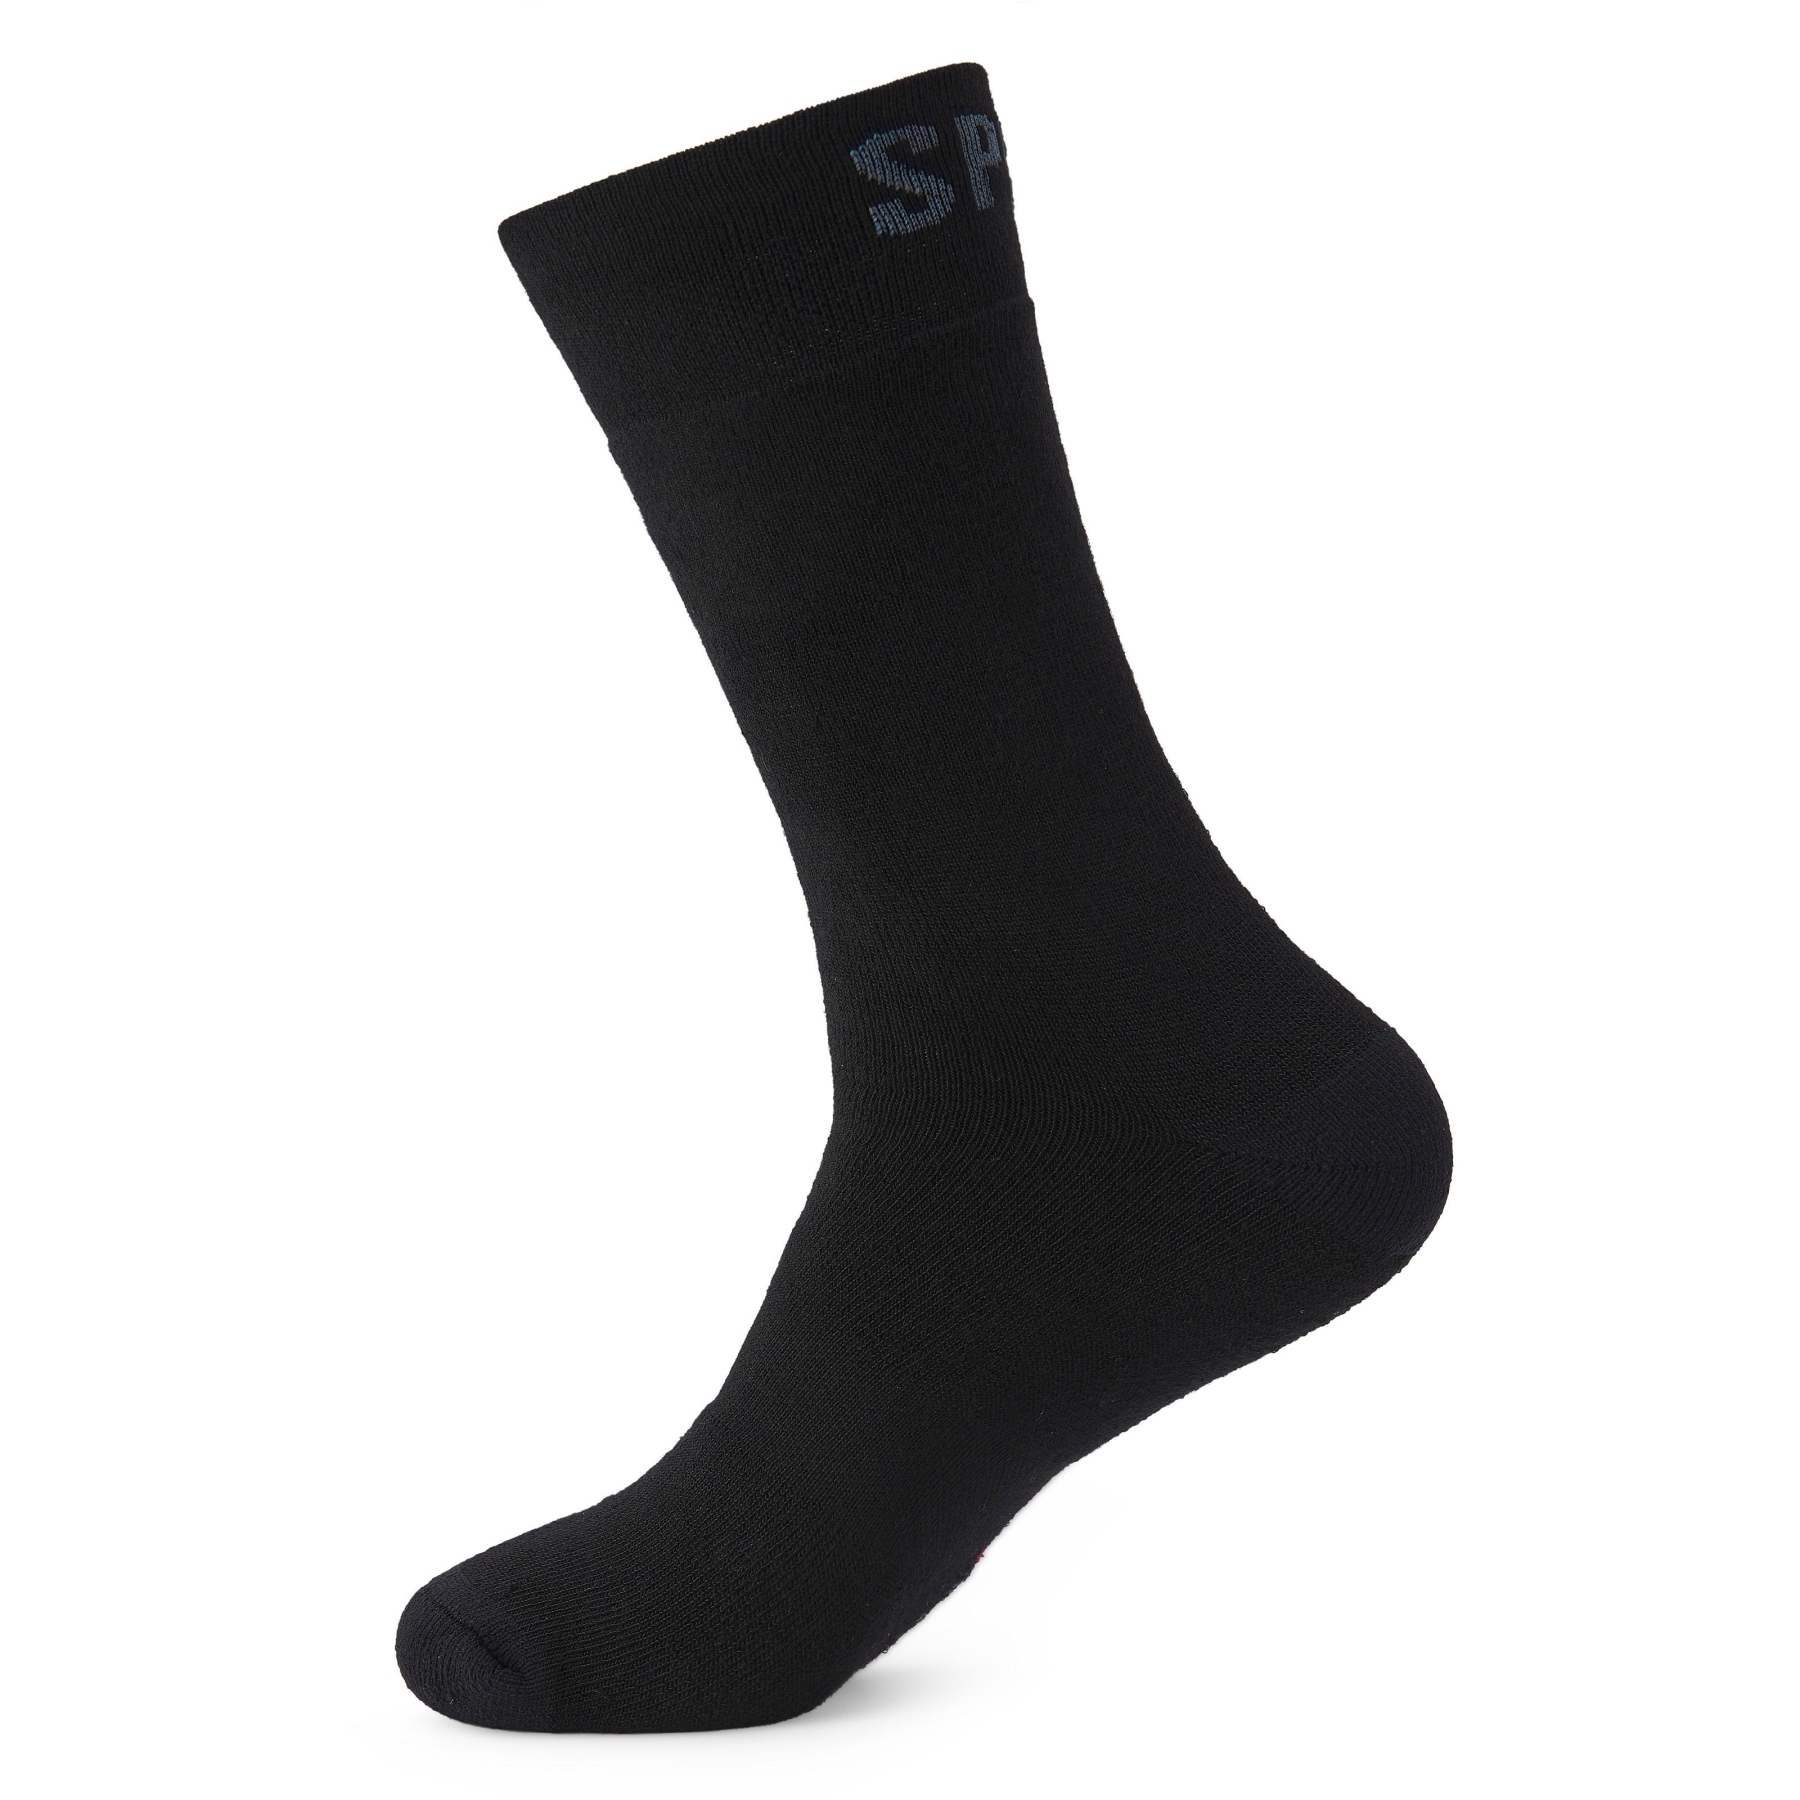 Produktbild von Spiuk ANATOMIC Winter Long Socken 2 Pack - schwarz